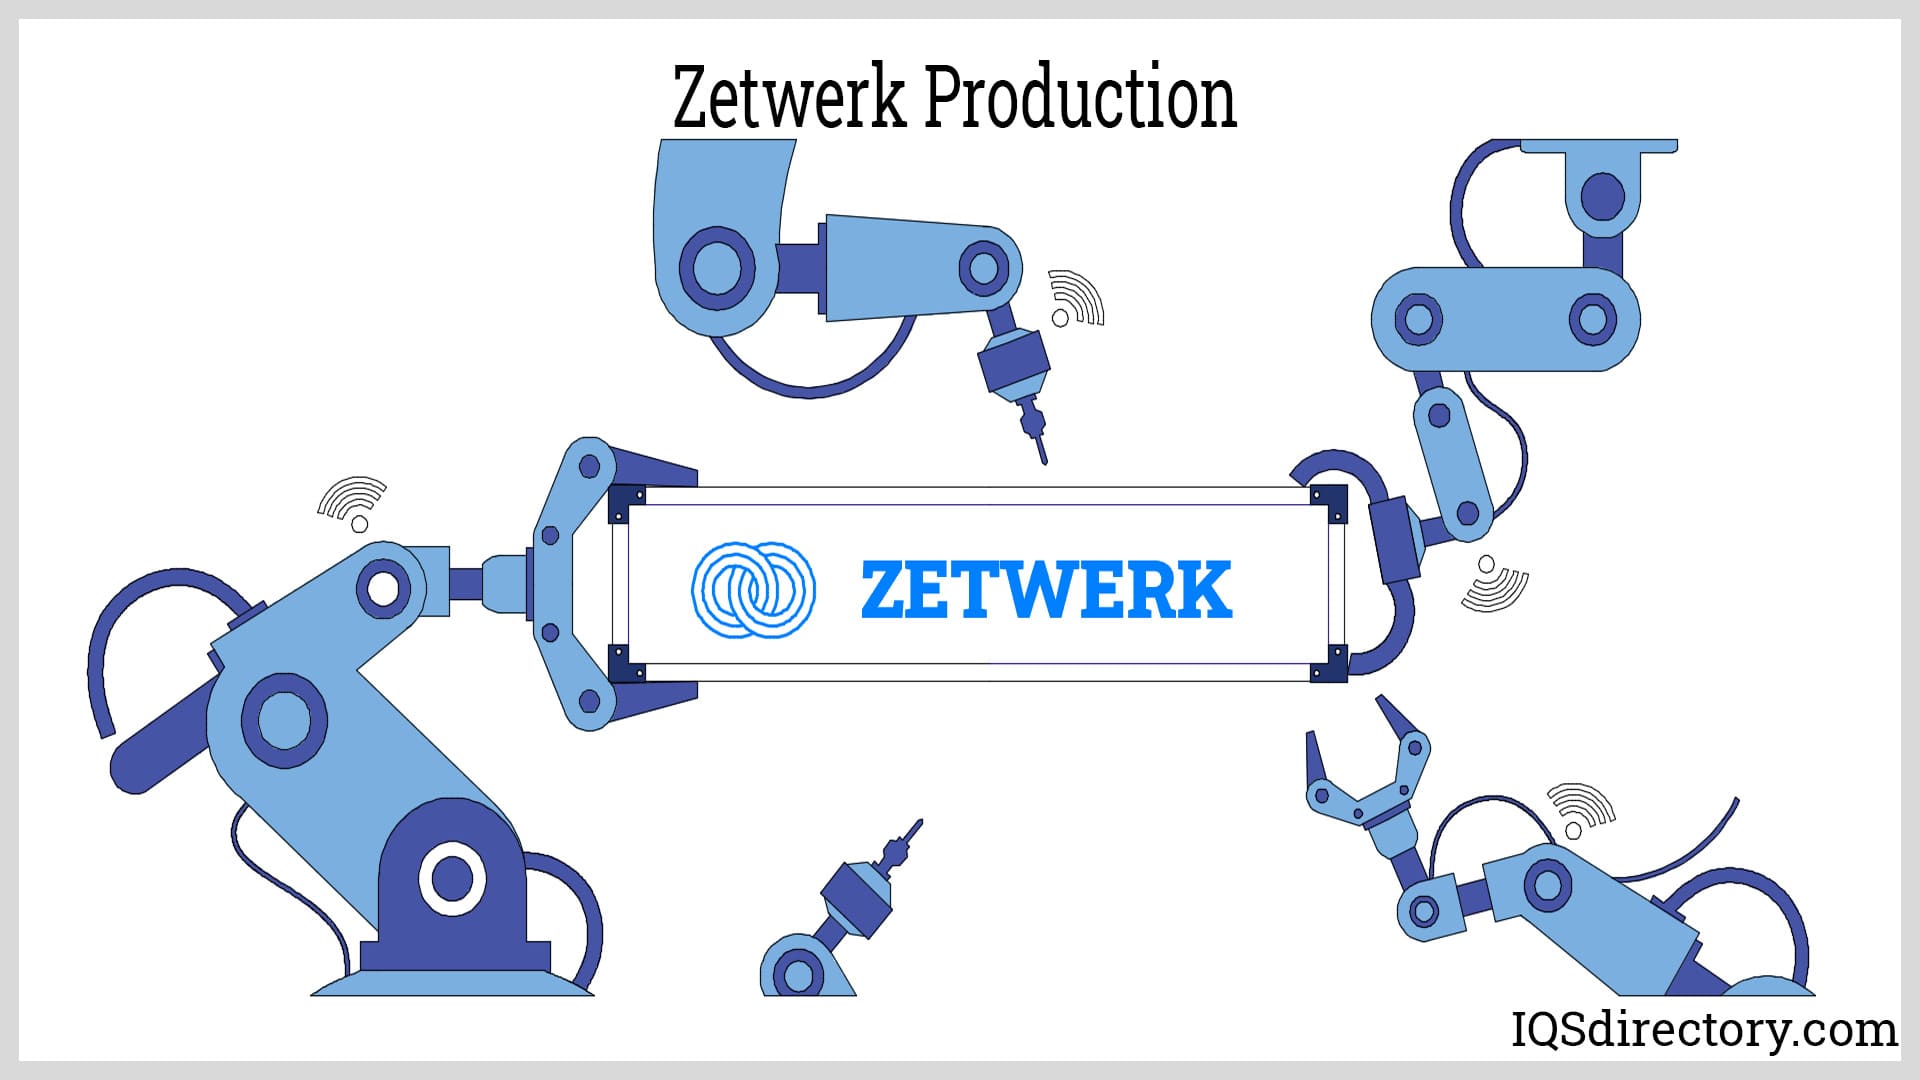 Zetwerk Production